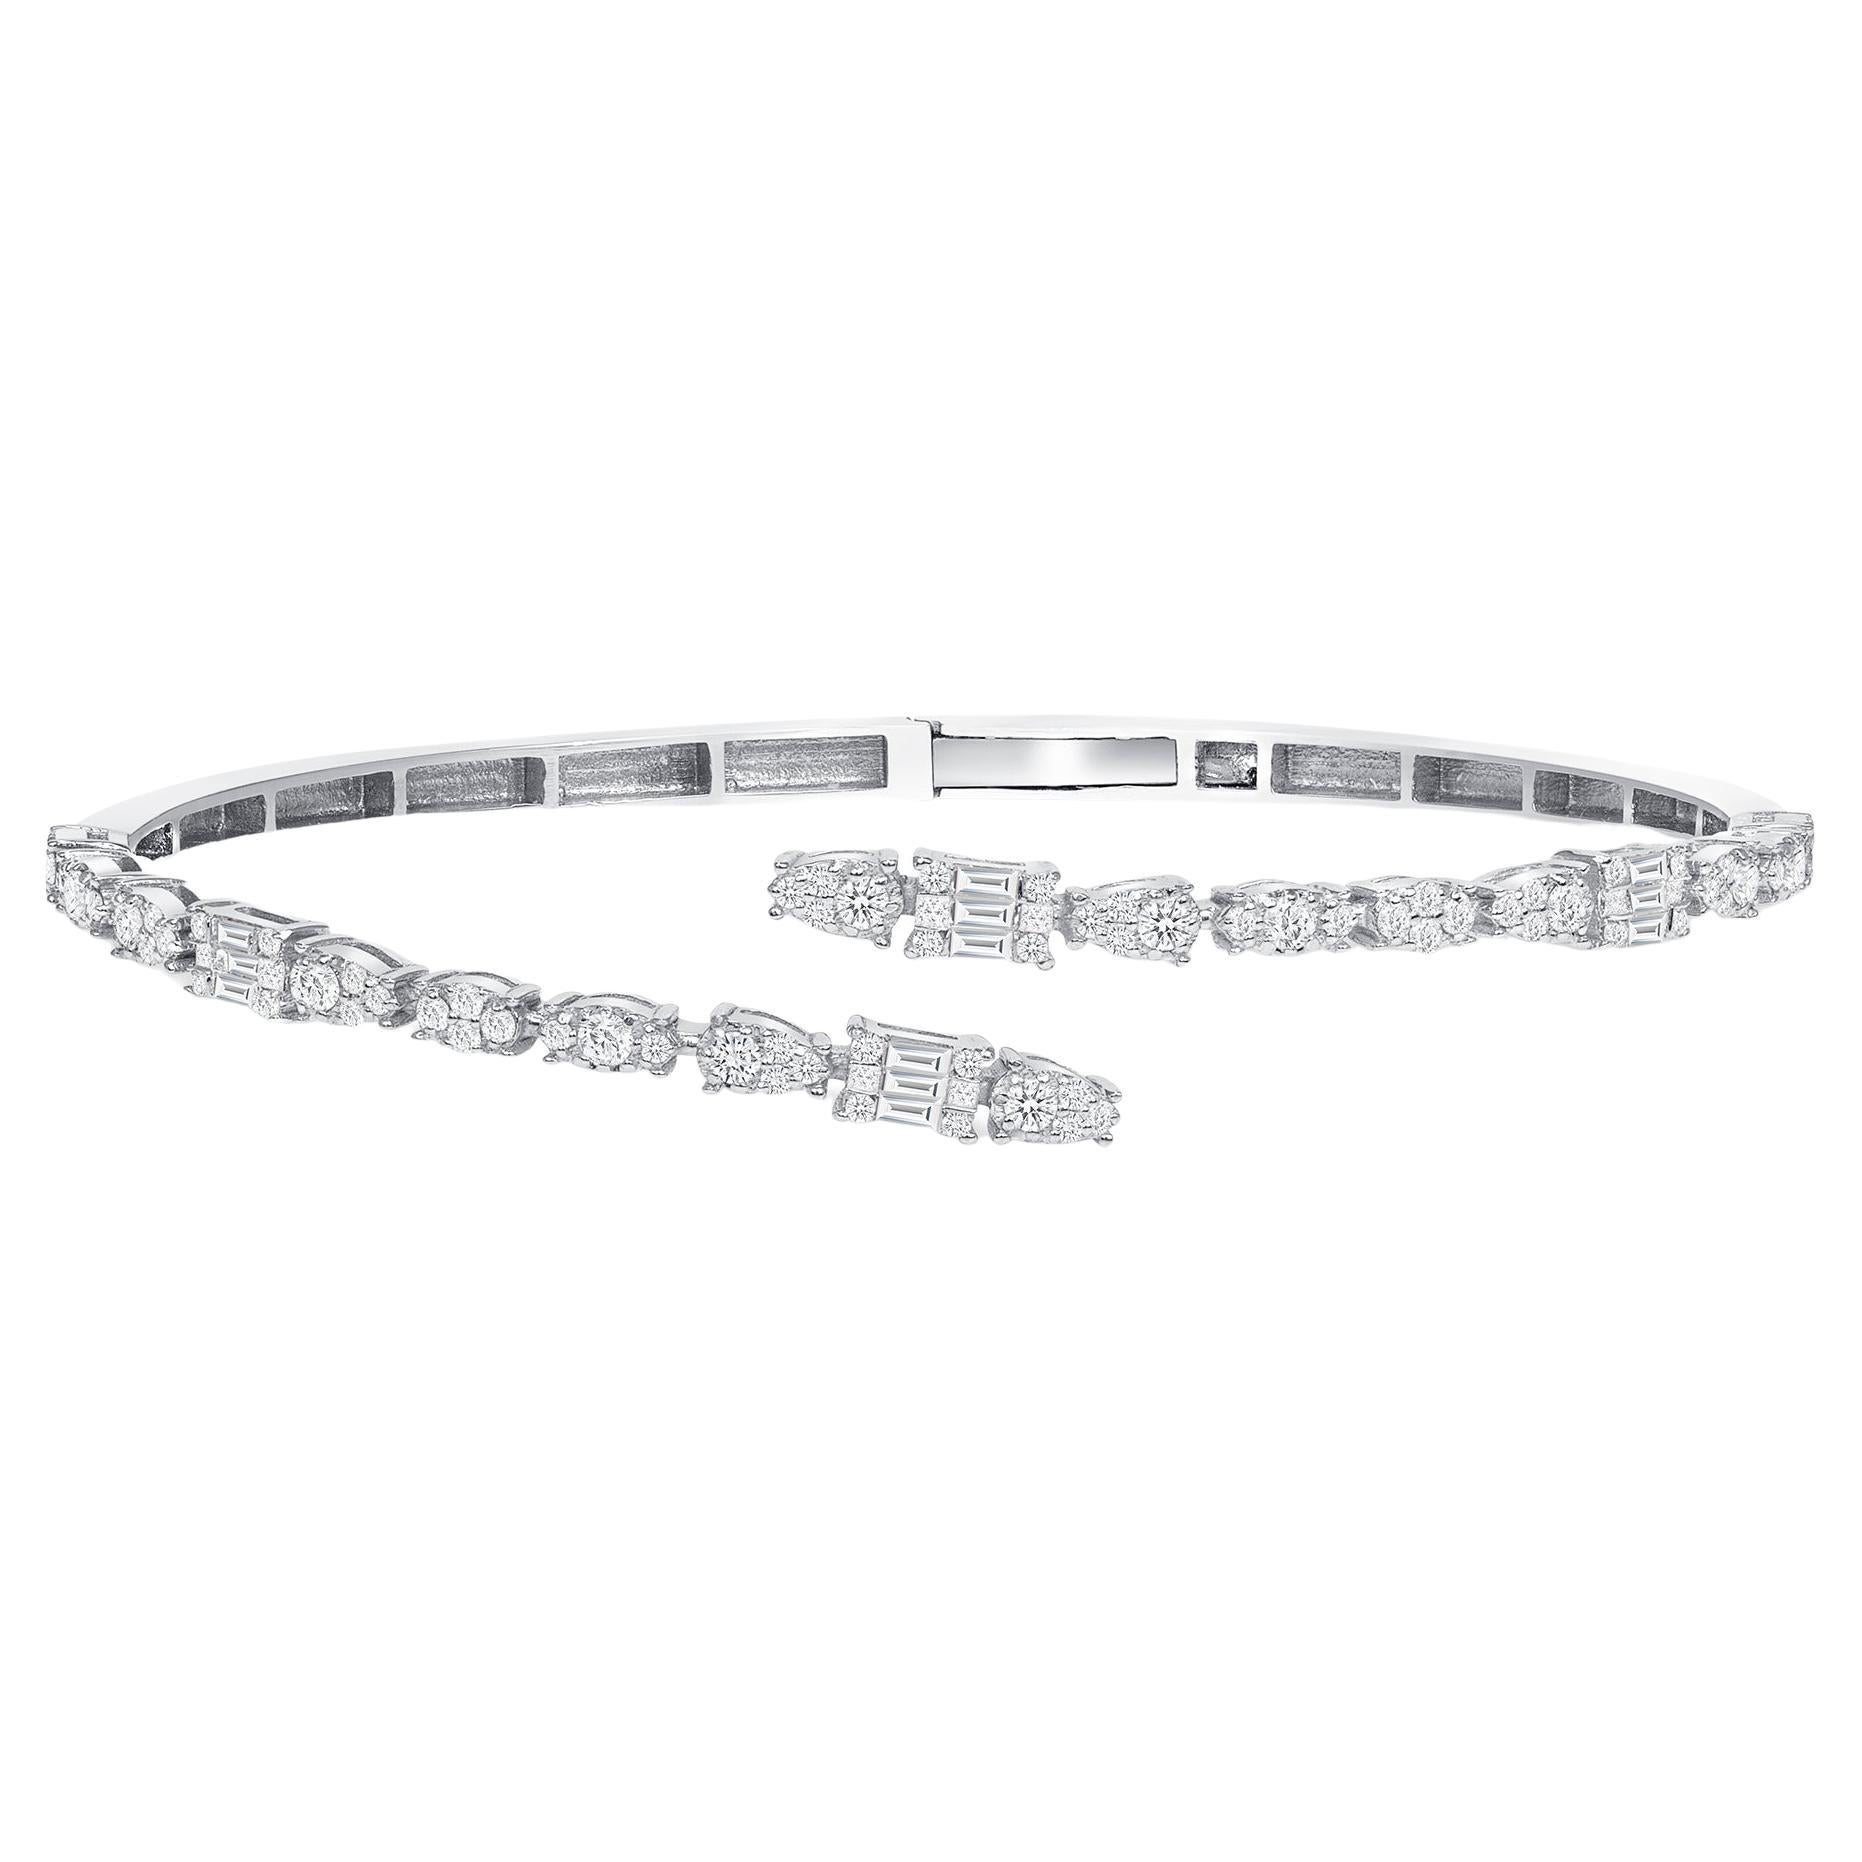 Bracelet manchette en or blanc 18 carats avec diamants 1,0 carat, bracelet jonc enveloppant et bracelet illusion